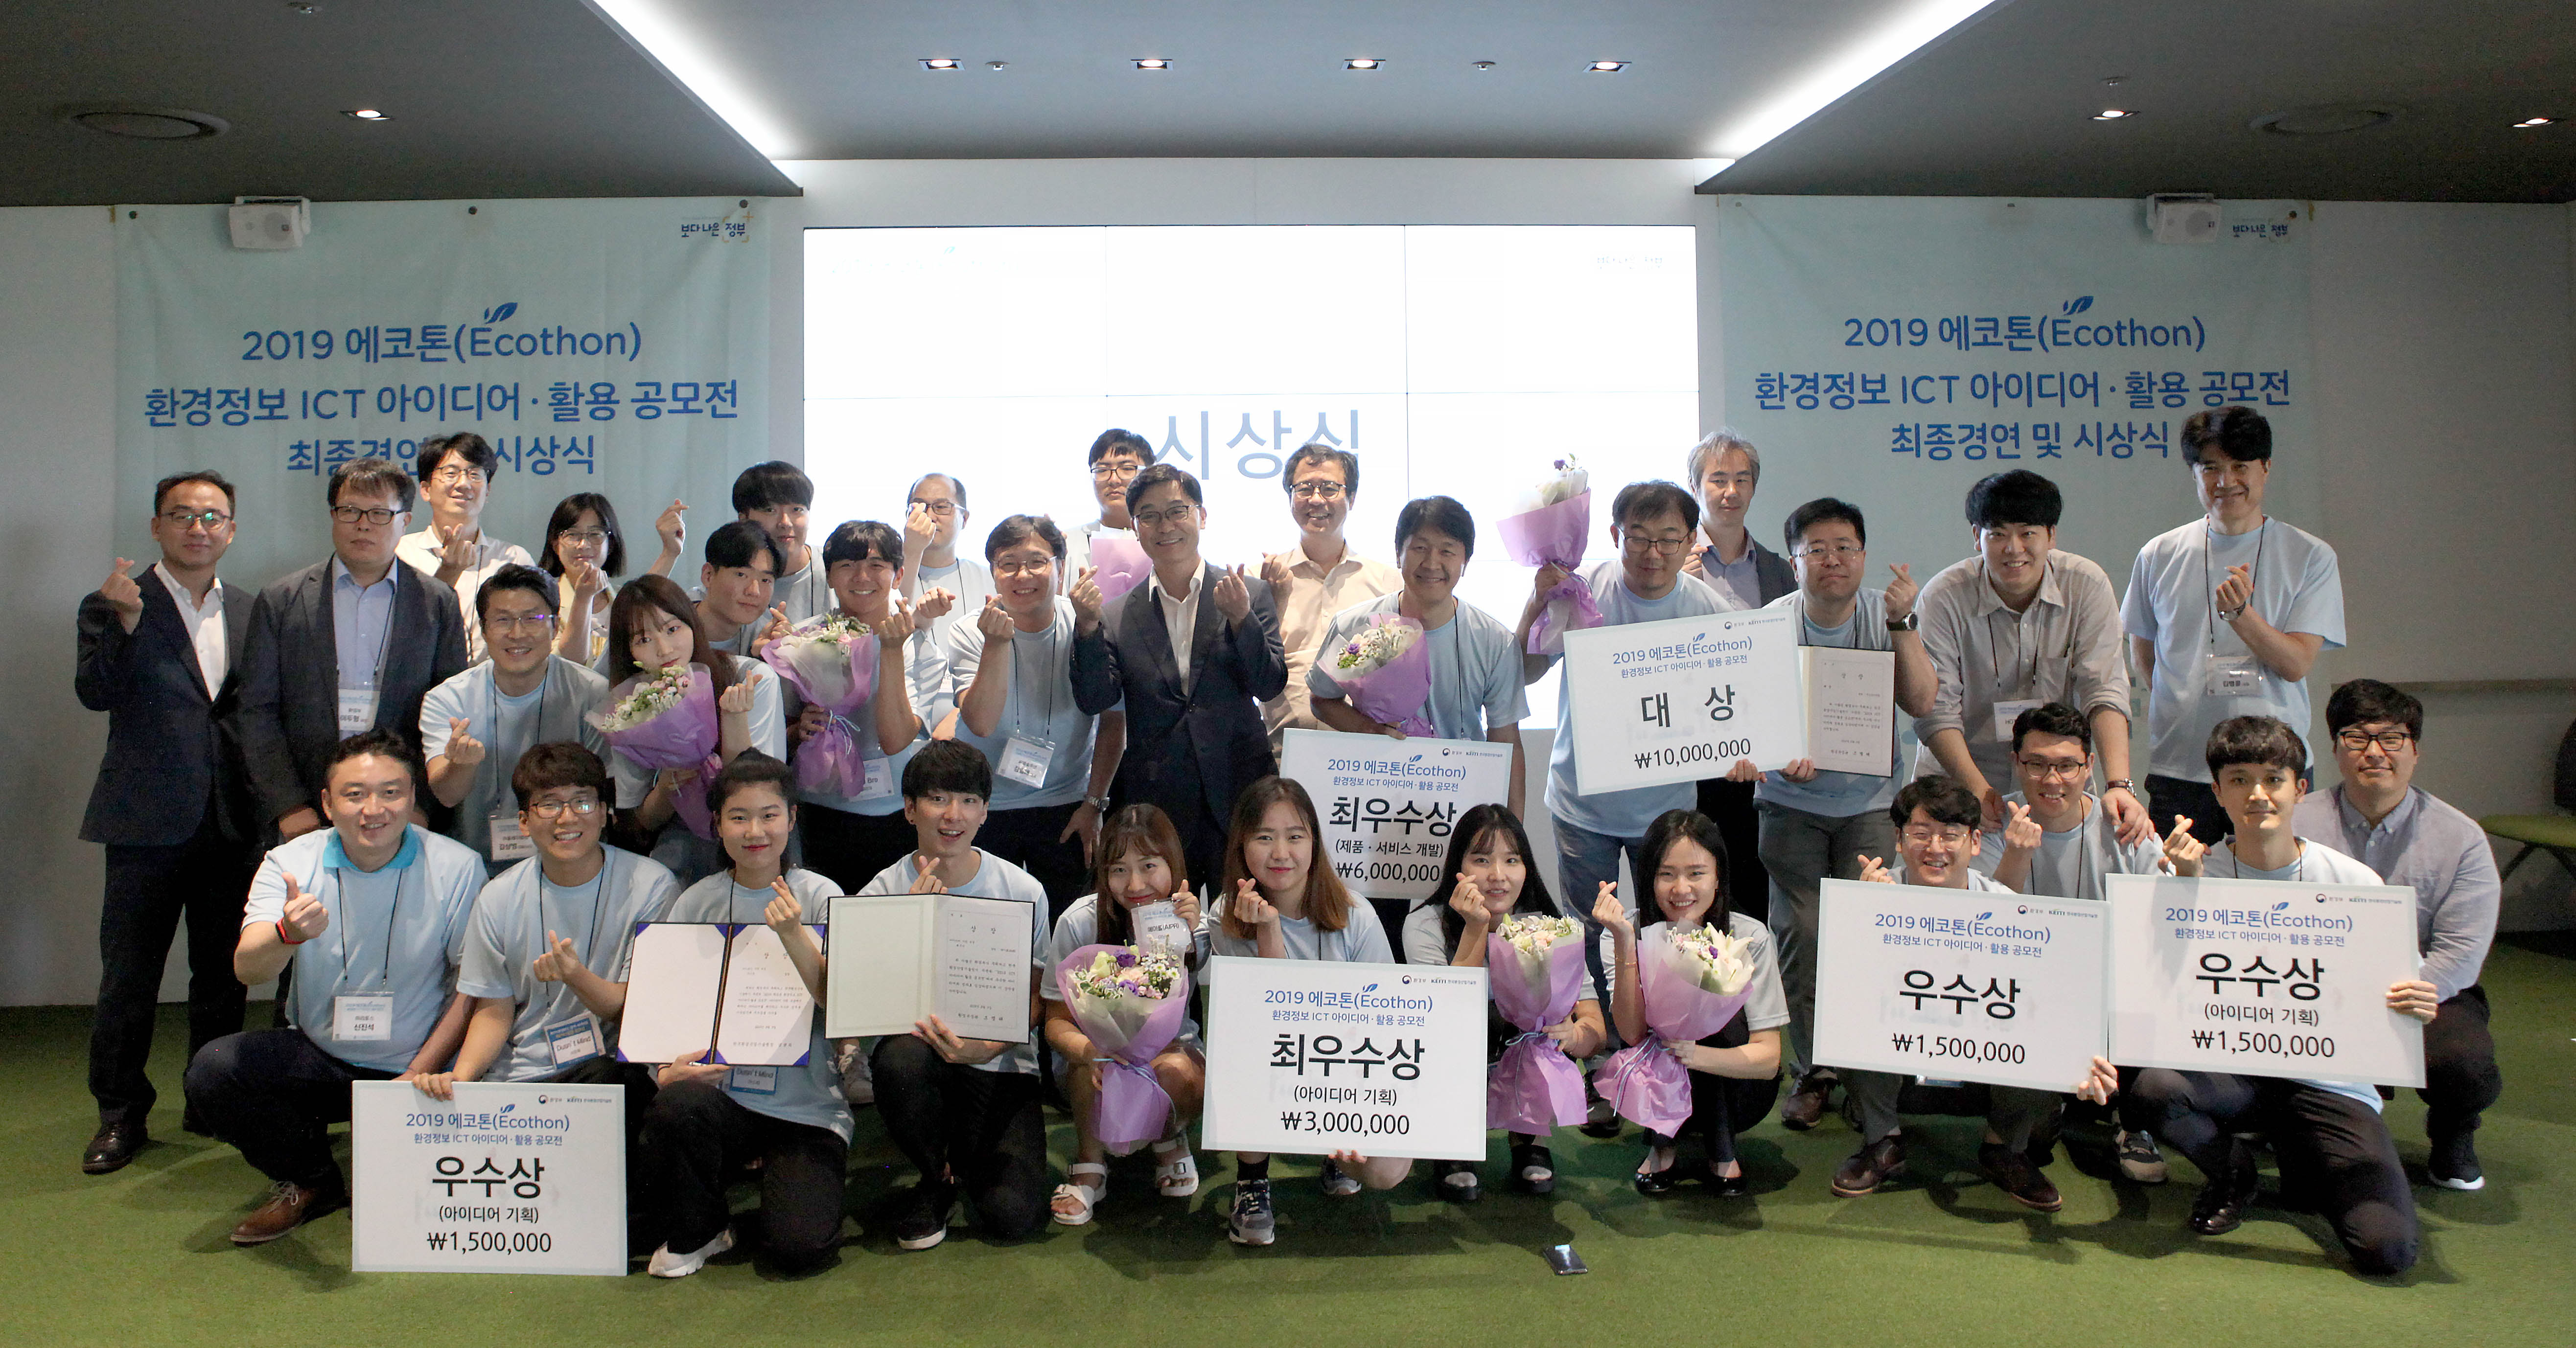 2019 환경정보 ICT 아이디어·활용 공모전(에코톤) 최종 경연대회 개최